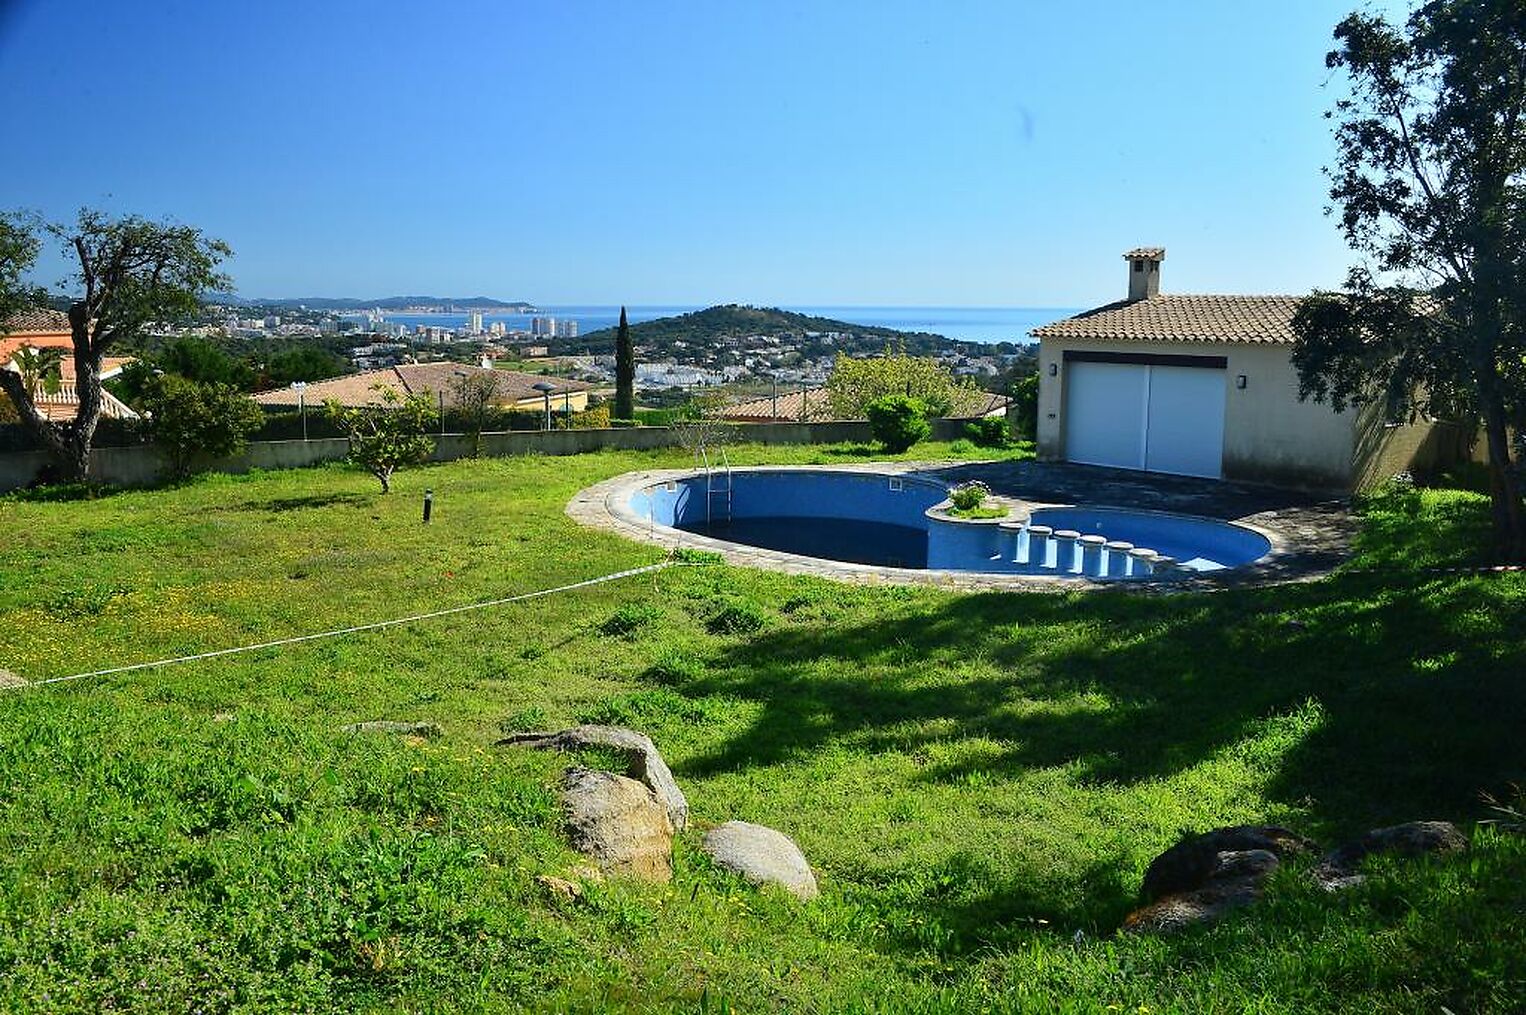 Magnifique Villa avec très jolies vues sur la mer, située à Sant Feliu de Guíxols.